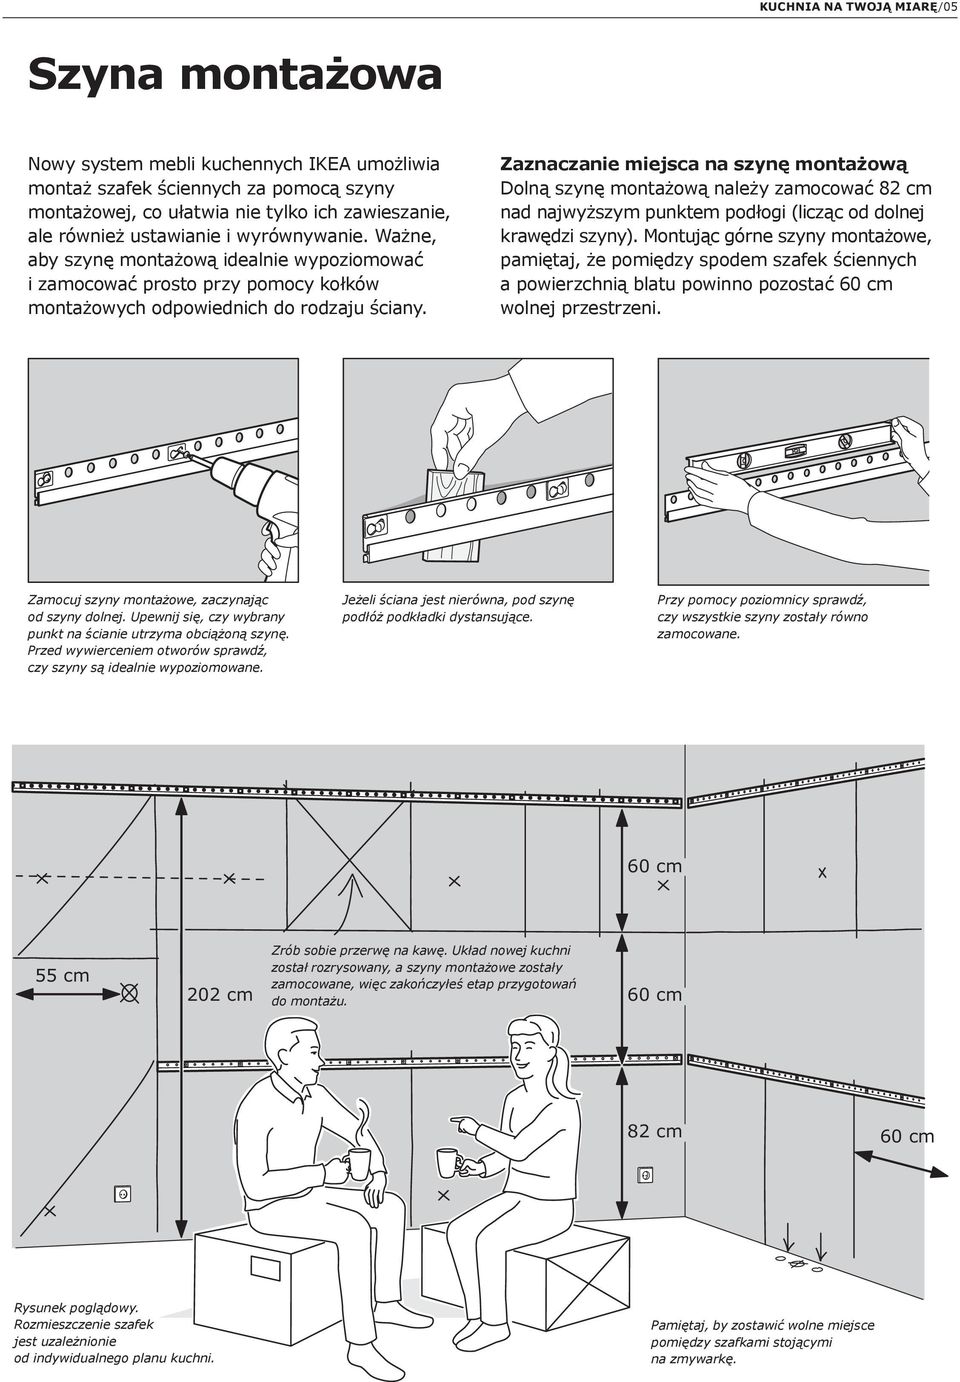 Zaznaczanie miejsca na szynę montażową Dolną szynę montażową należy zamocować 82 cm nad najwyższym punktem podłogi (licząc od dolnej krawędzi szyny).